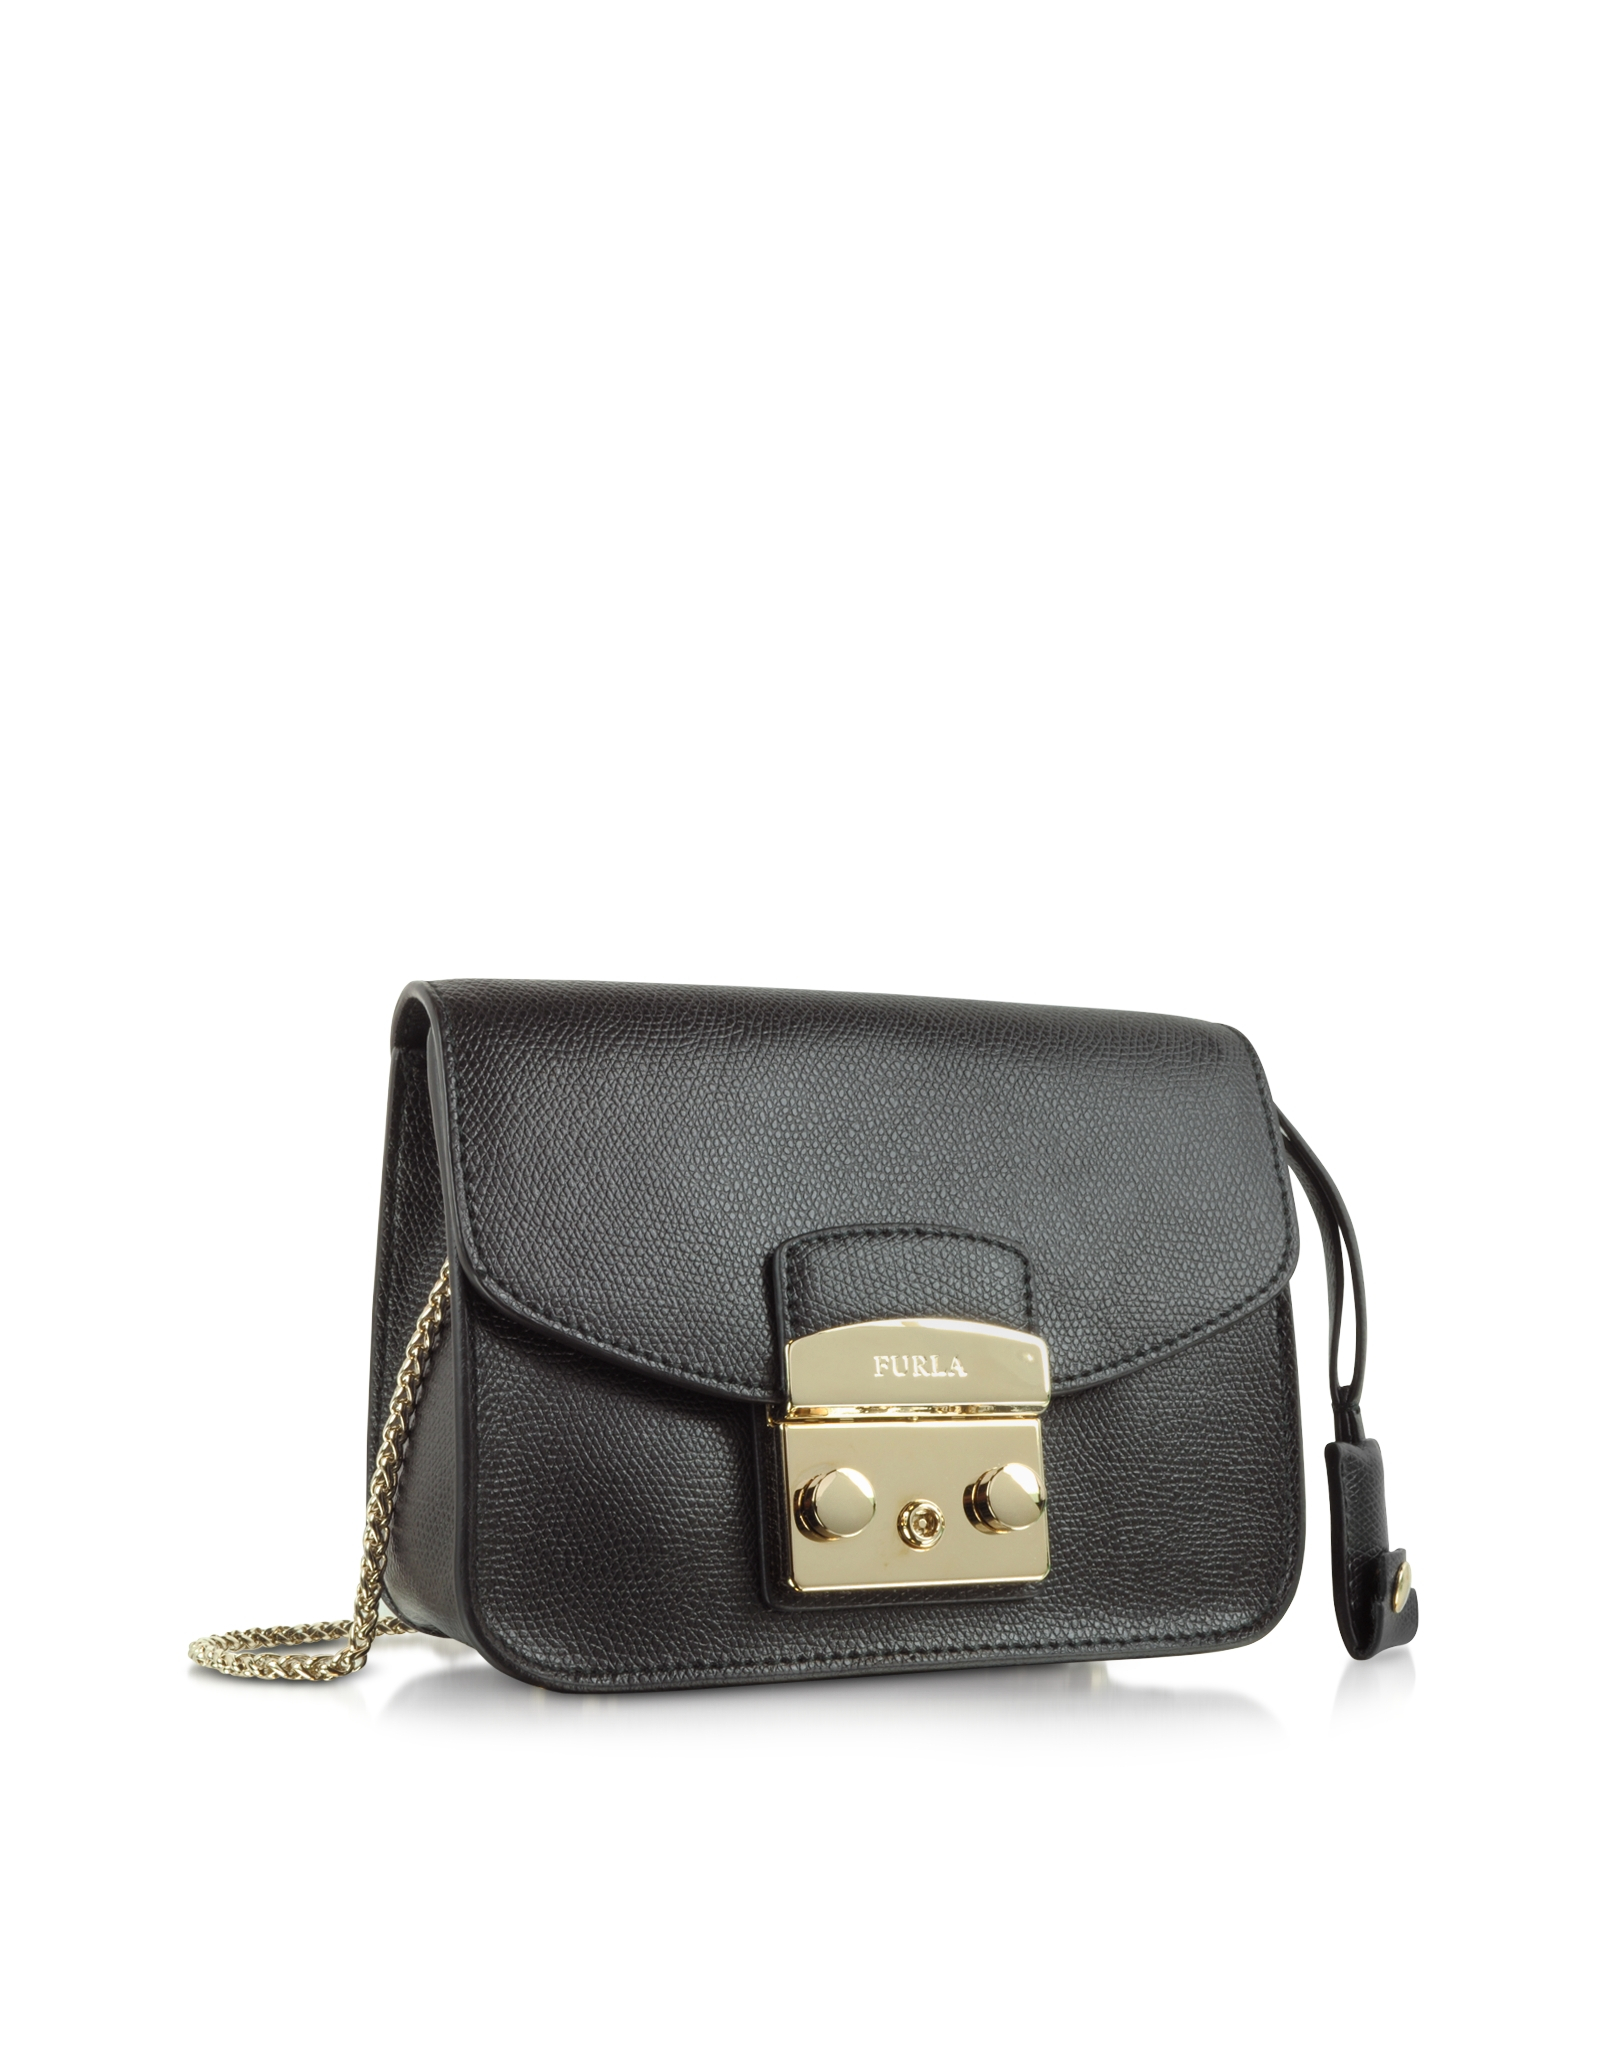 Lyst - Furla Metropolis Mini Crossbody Bag in Black - Save 45%